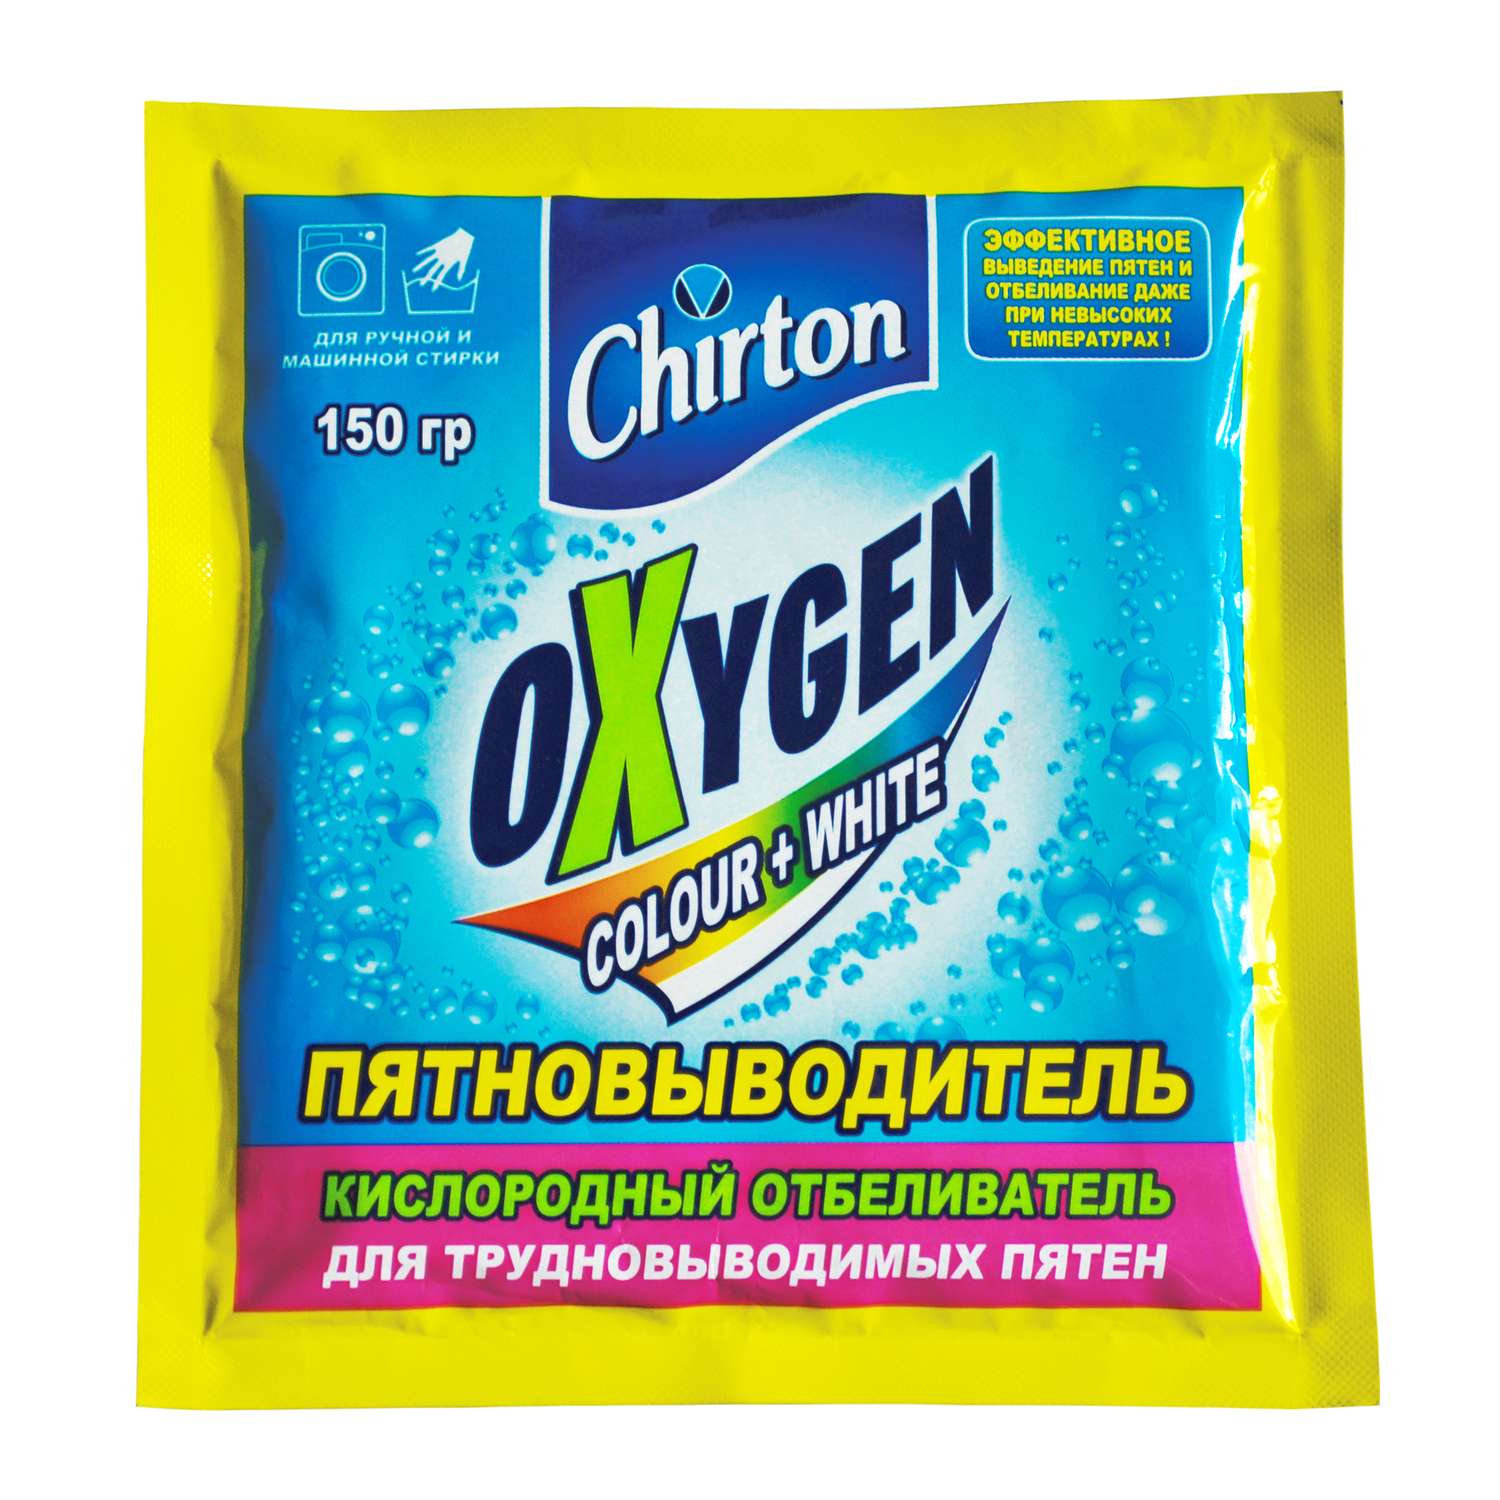 Кислородный отбеливатель Chirton пятновыводитель порошок Оксиджен 150г - фото 1